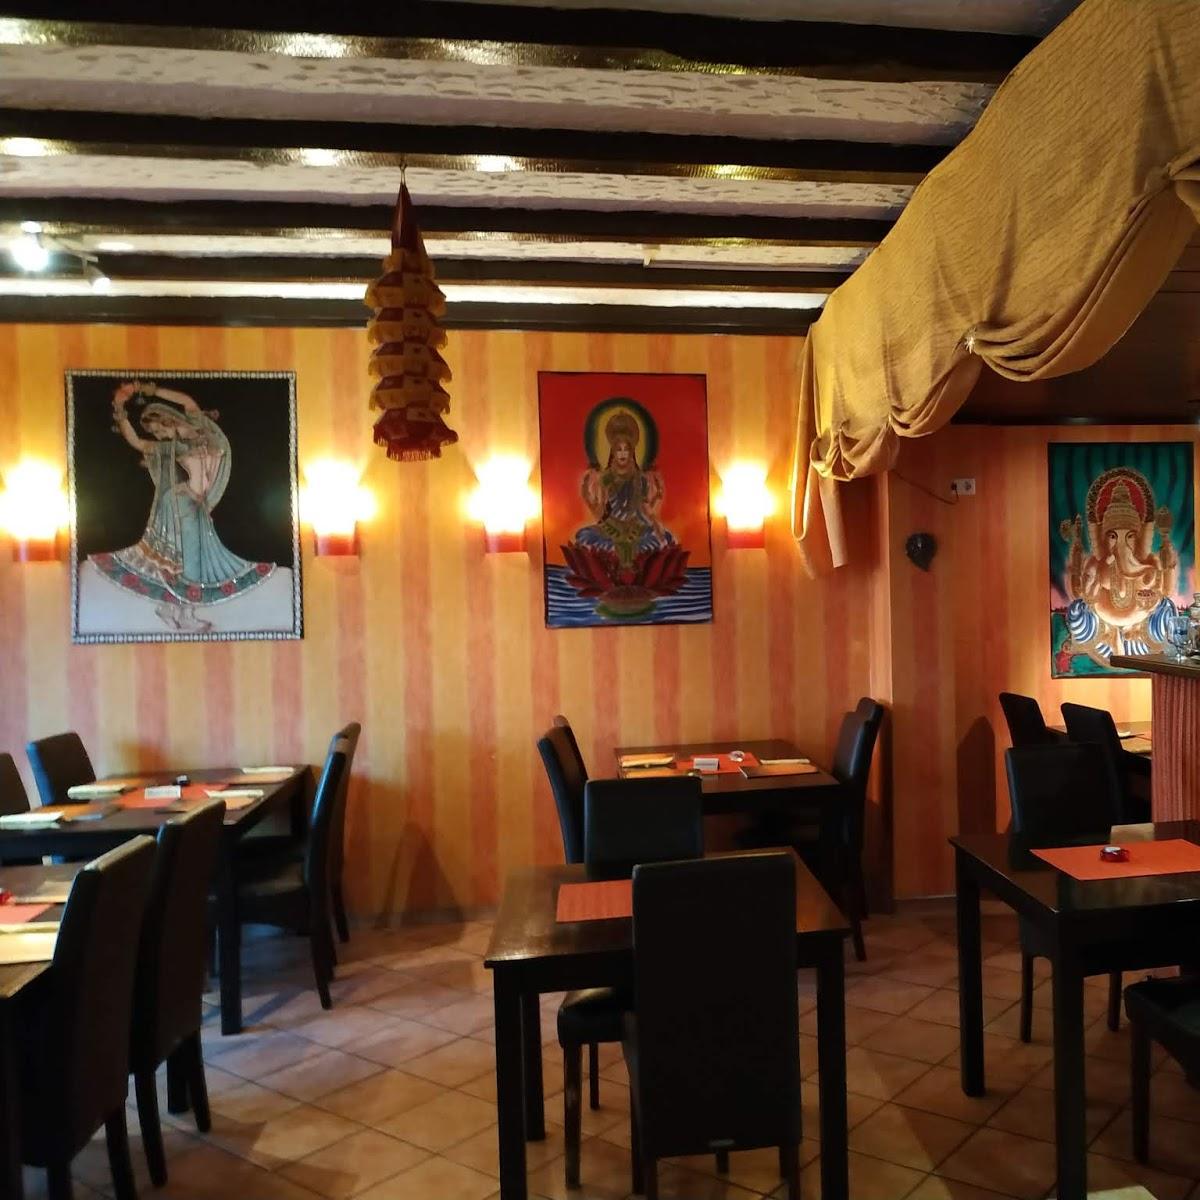 Restaurant "Der Kleine Inder" in Fürth